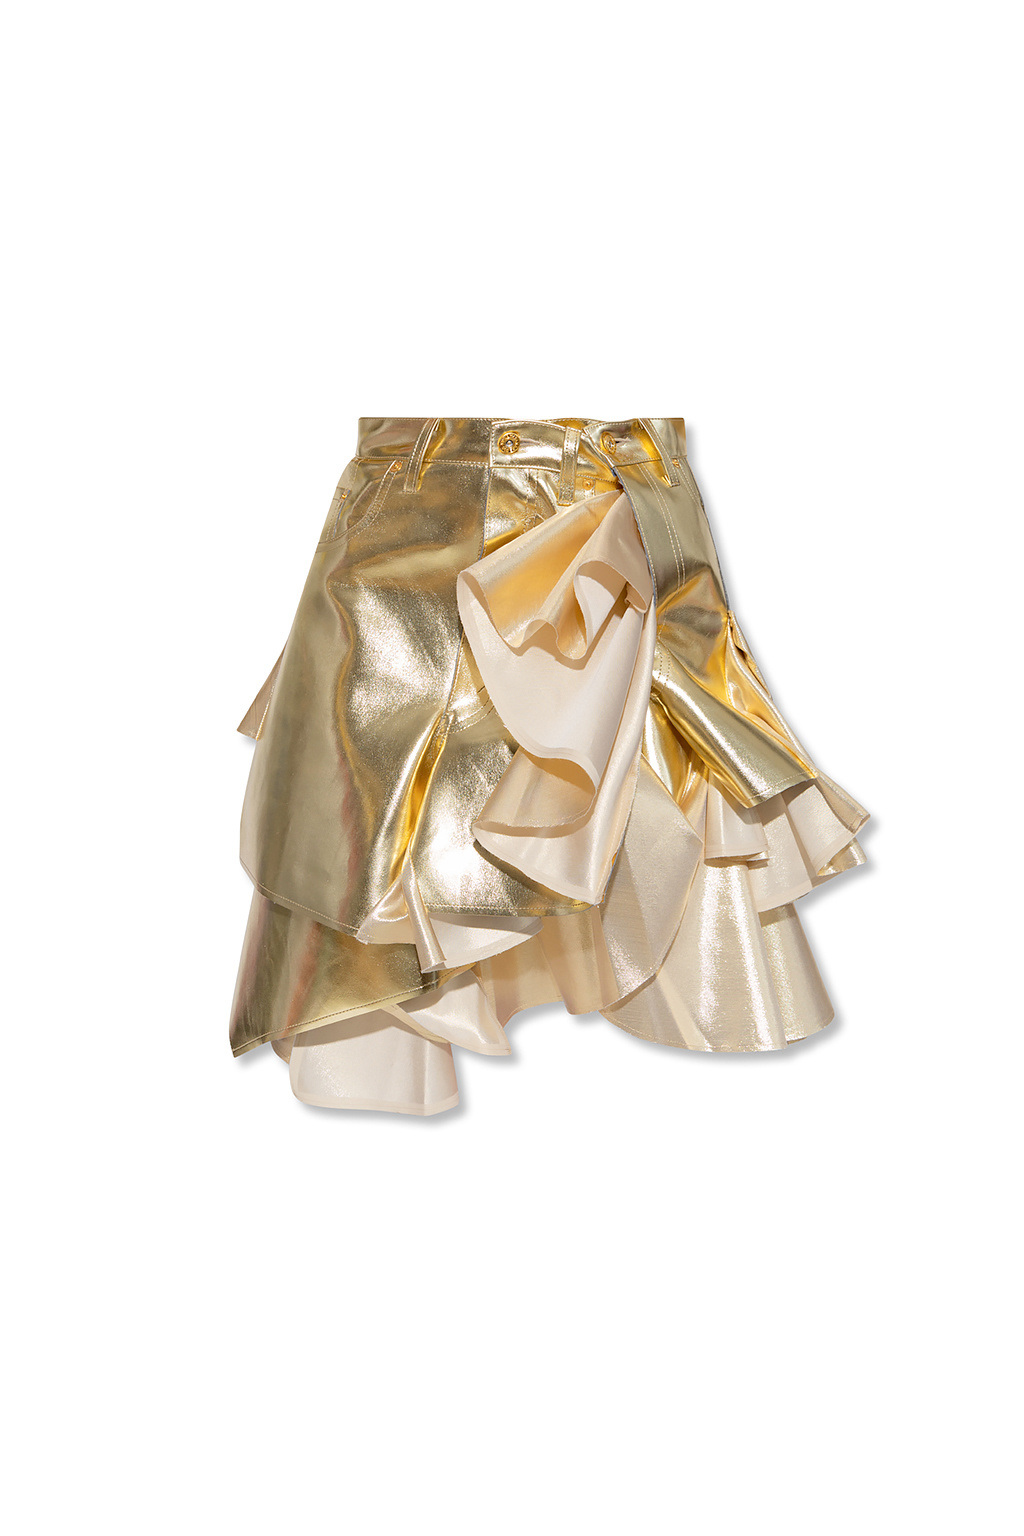 BALENCIAGA - VISION FOR A MEDAL Asymmetric skirt